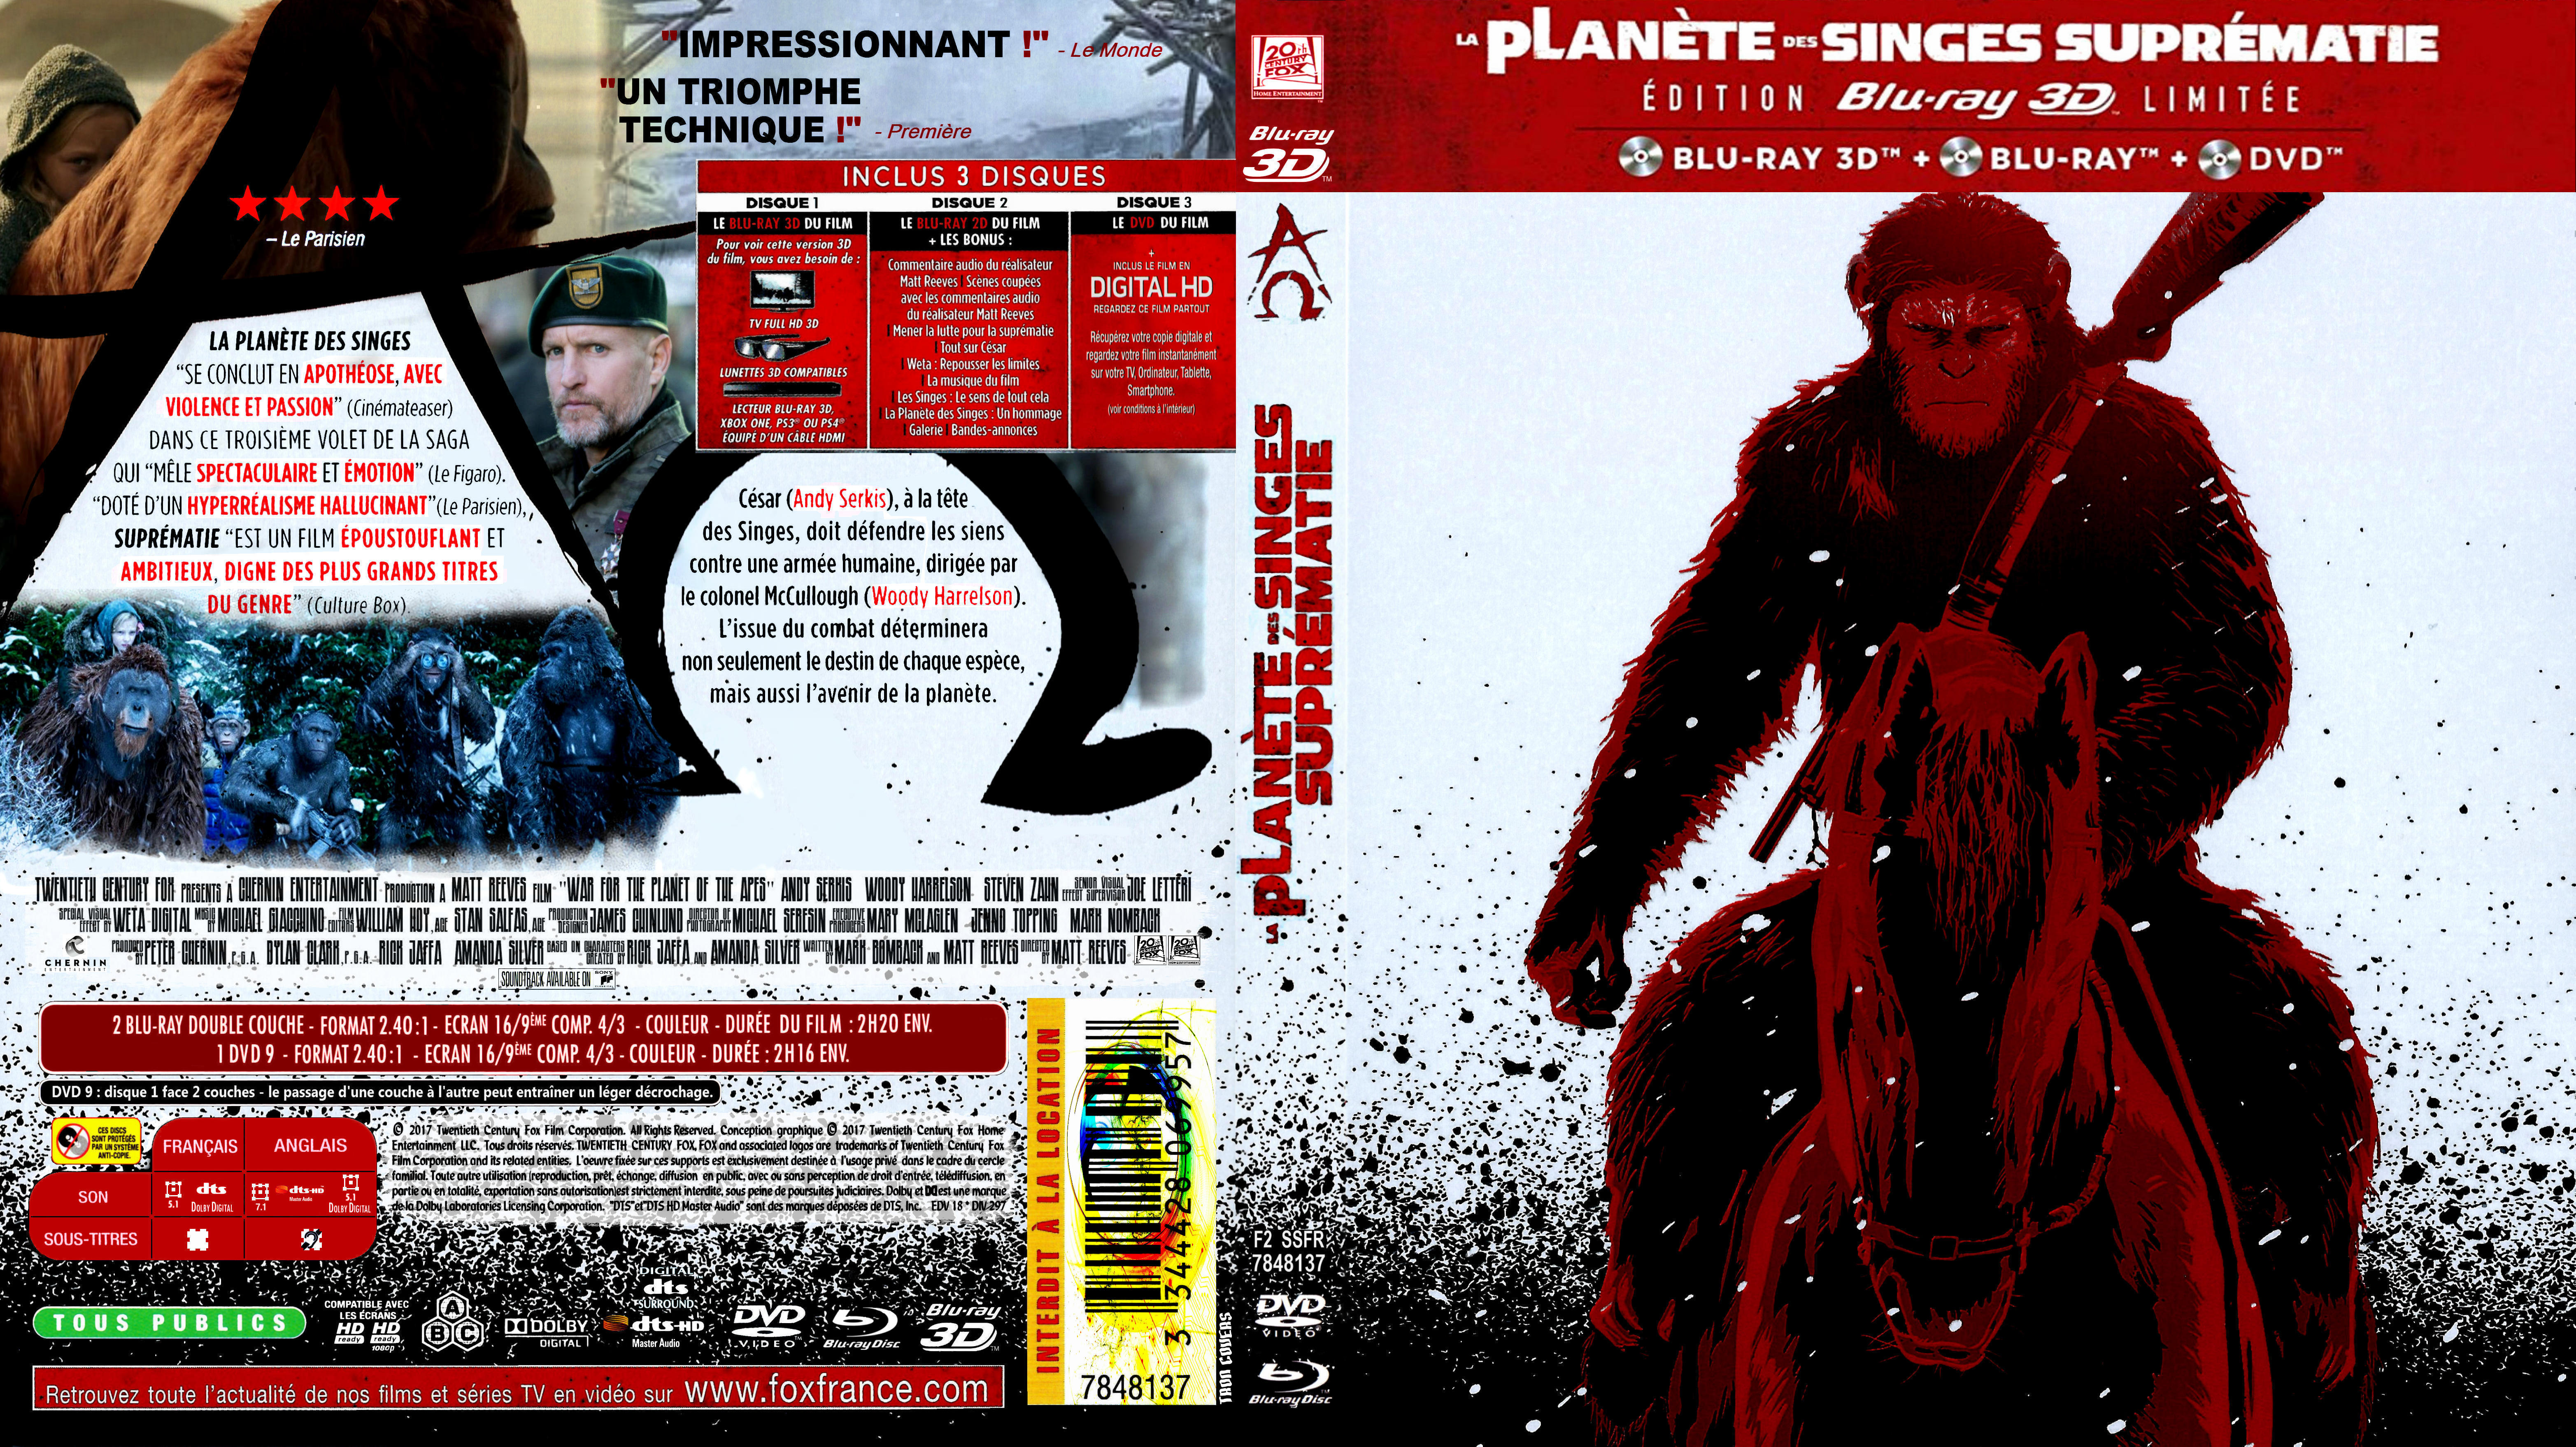 Jaquette DVD La planete des singes suprematie 3D custom (BLU-RAY)